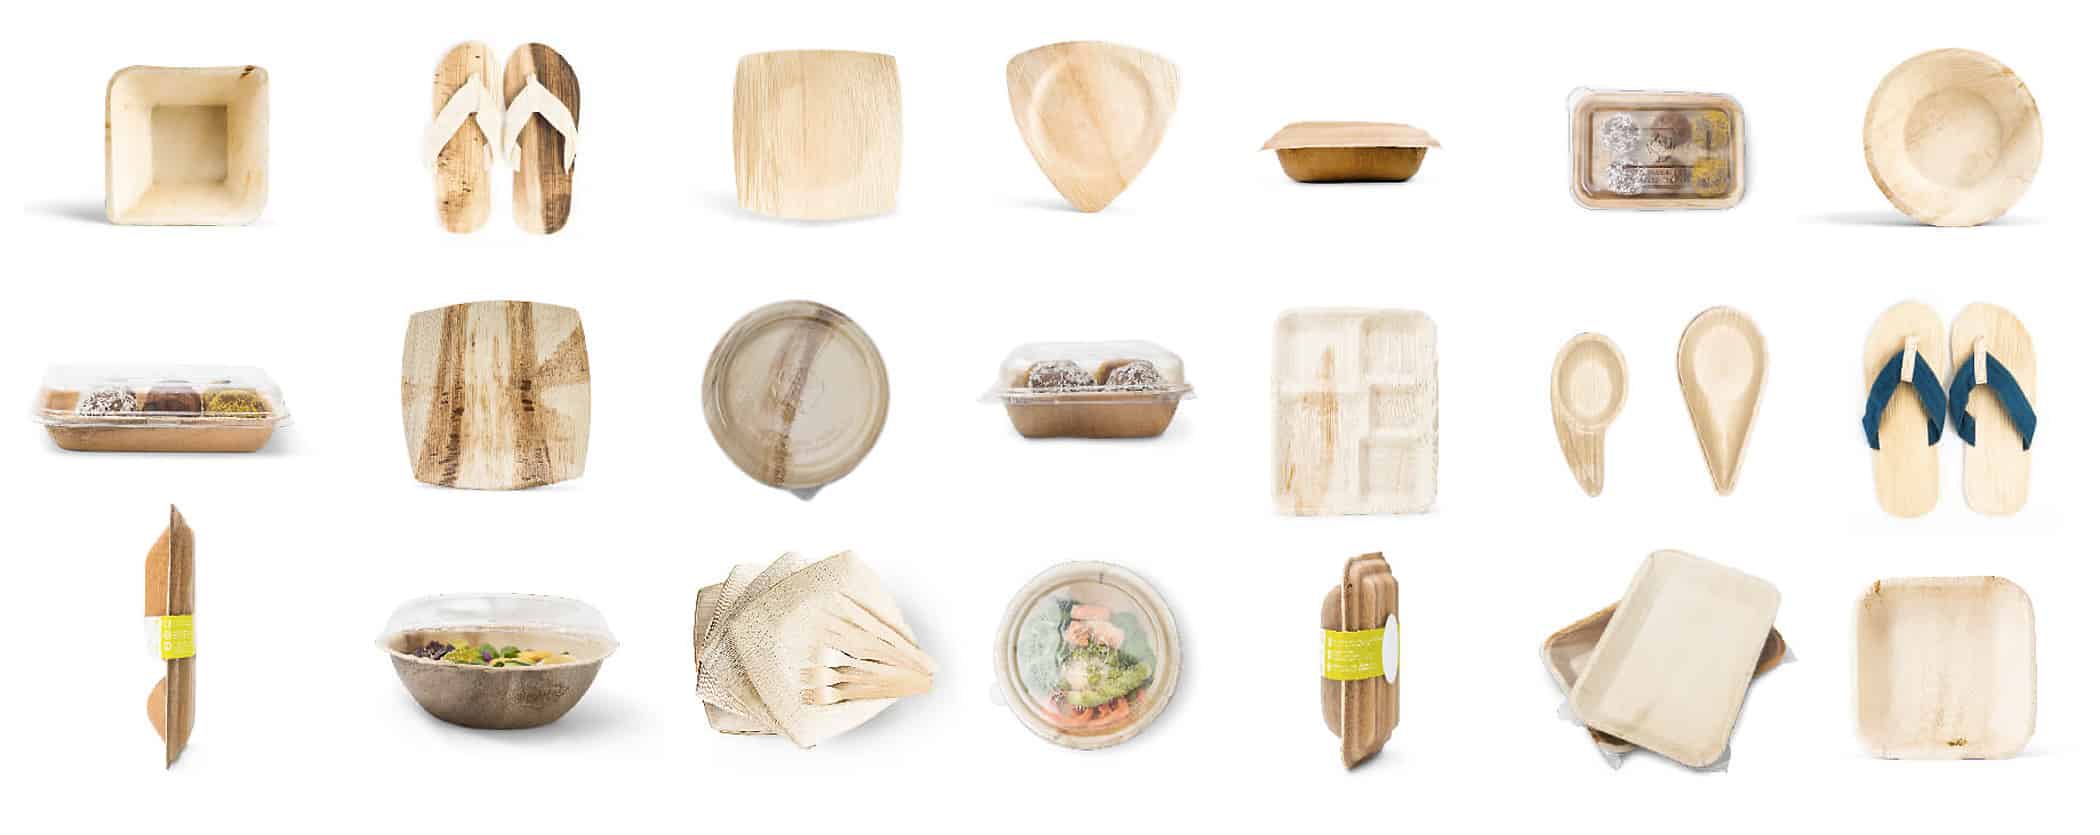 leef palmblatt sortiment - gastronomie, food-nomyblog Teller zum Mitnehmen: 7 Gründe für die Verwendung der nachhaltigen Palmblatt-Produkte von LEEF